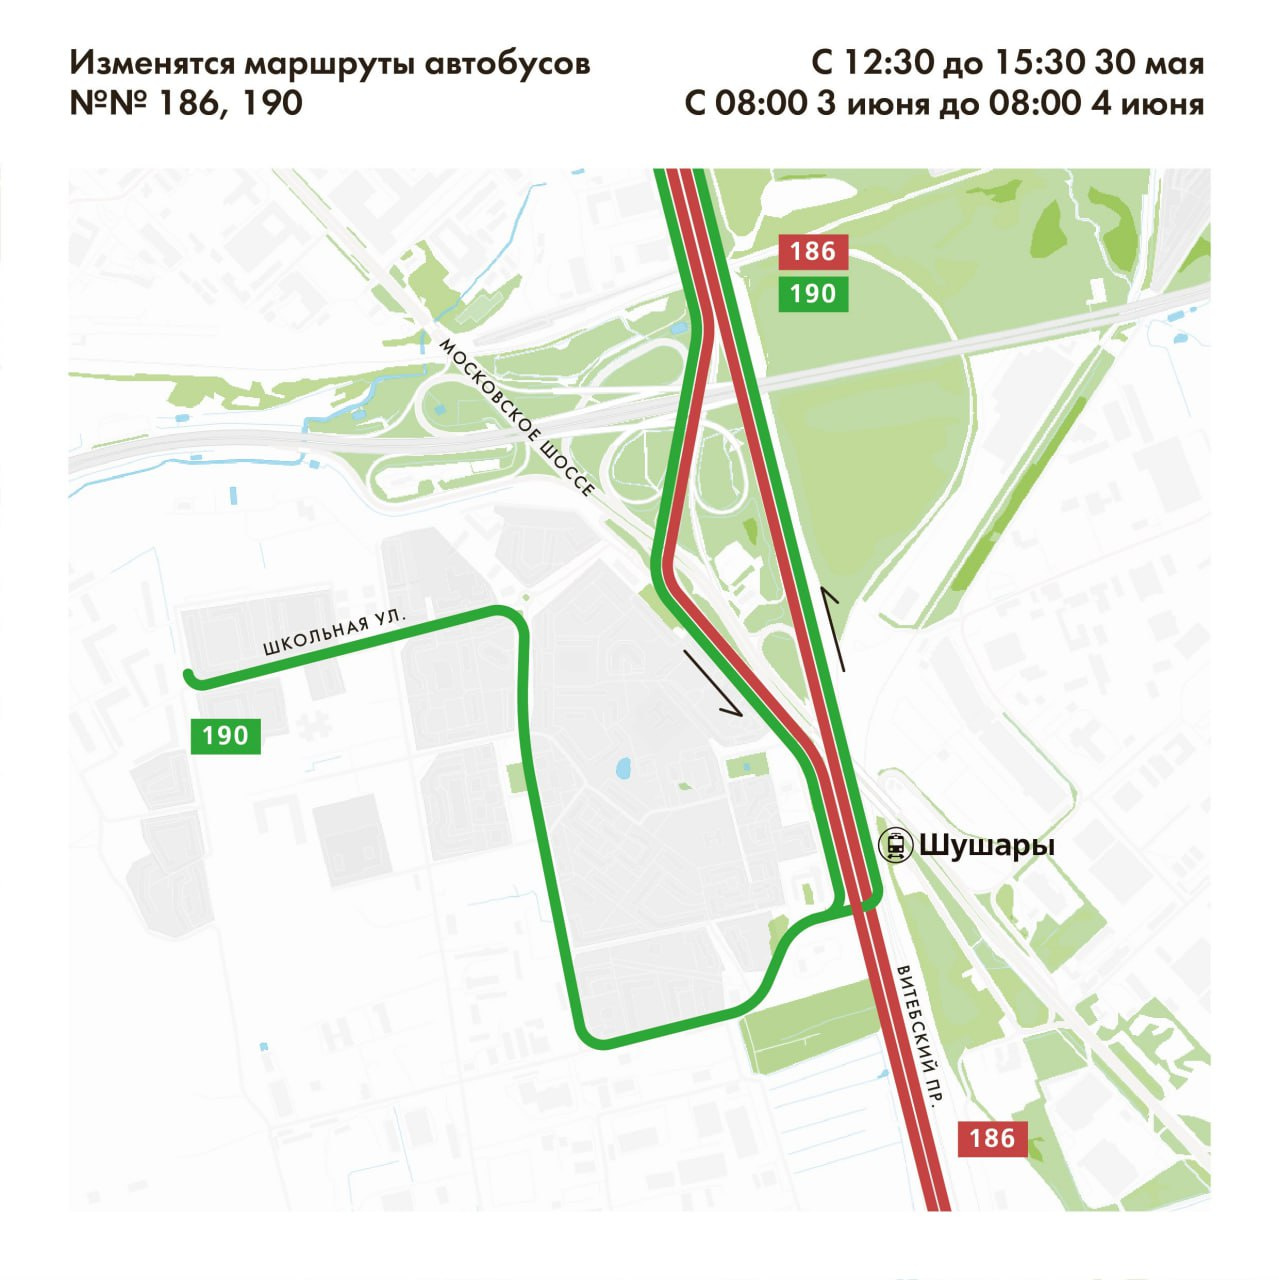 Ремонт на Витебском в Шушарах на несколько дней изменит маршруты автобусов